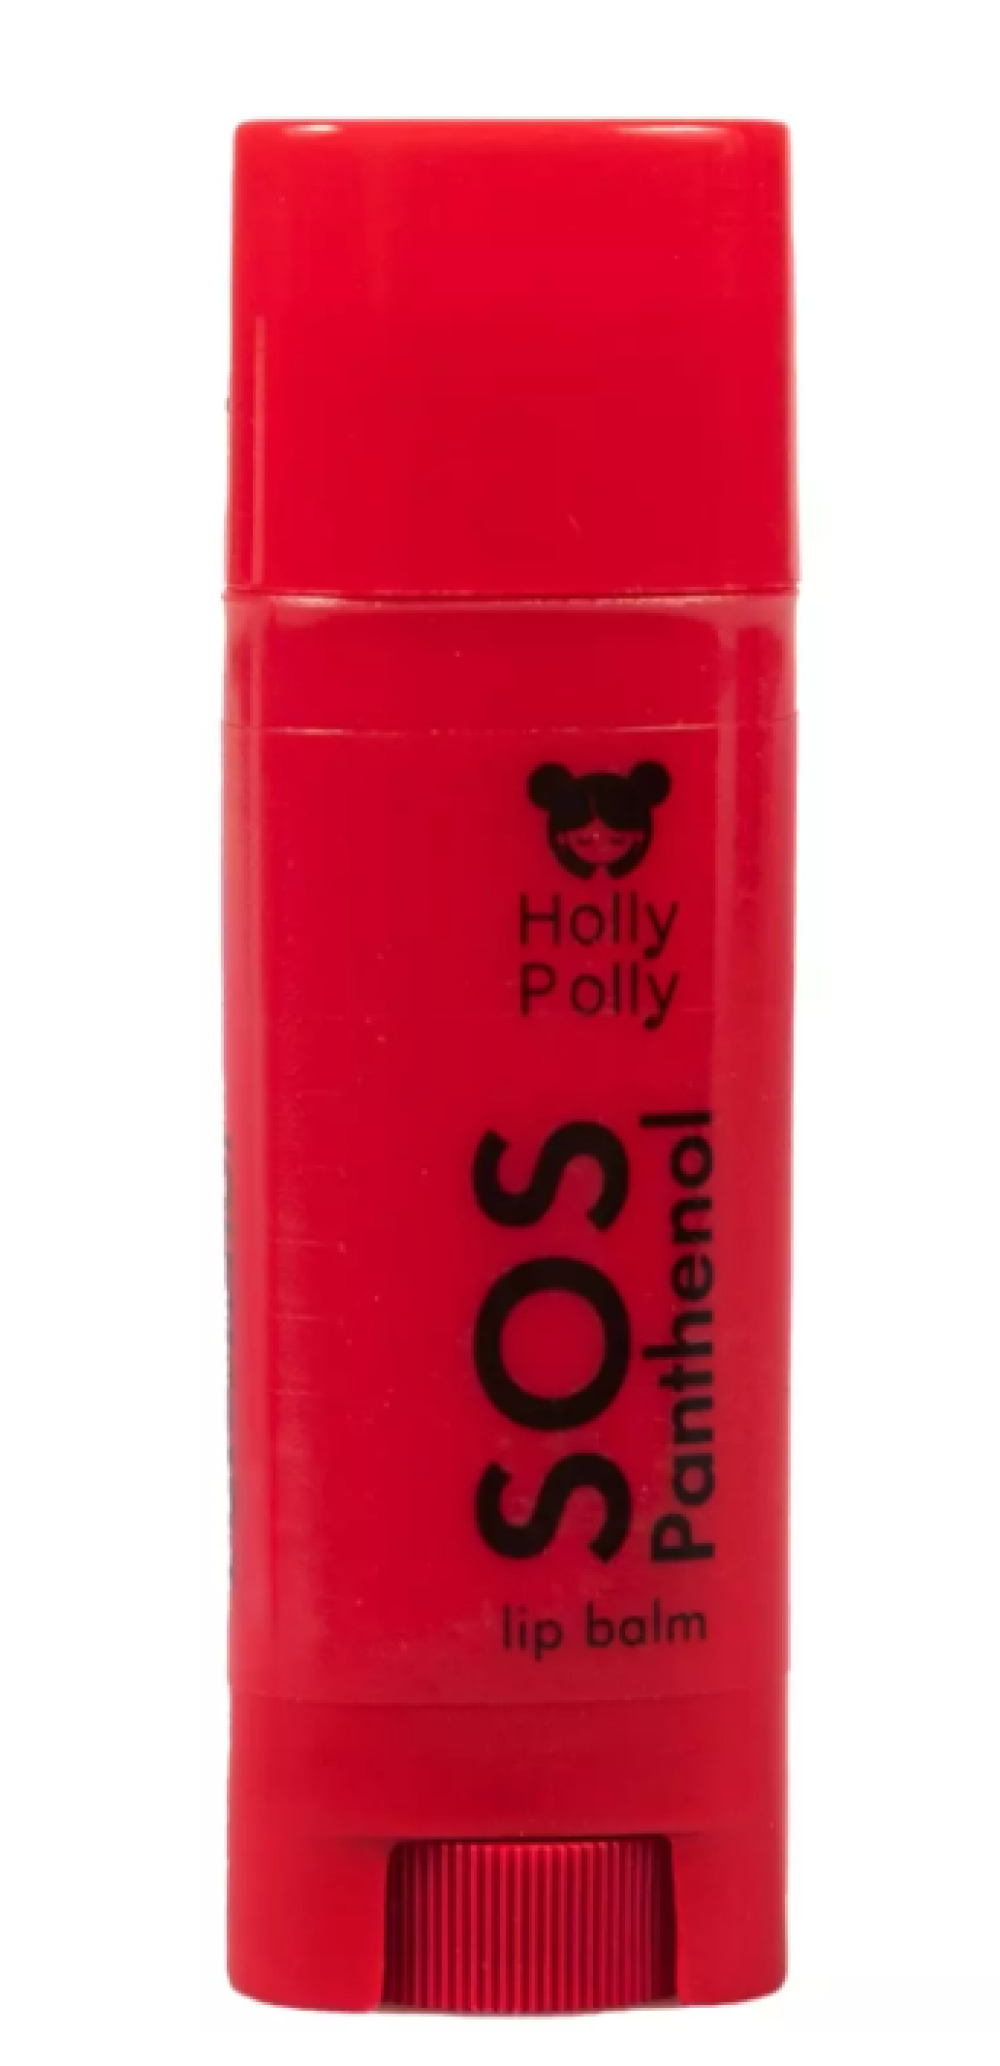 Бальзам для губ Holly Polly SOS Panthenol Вишня,4,8г